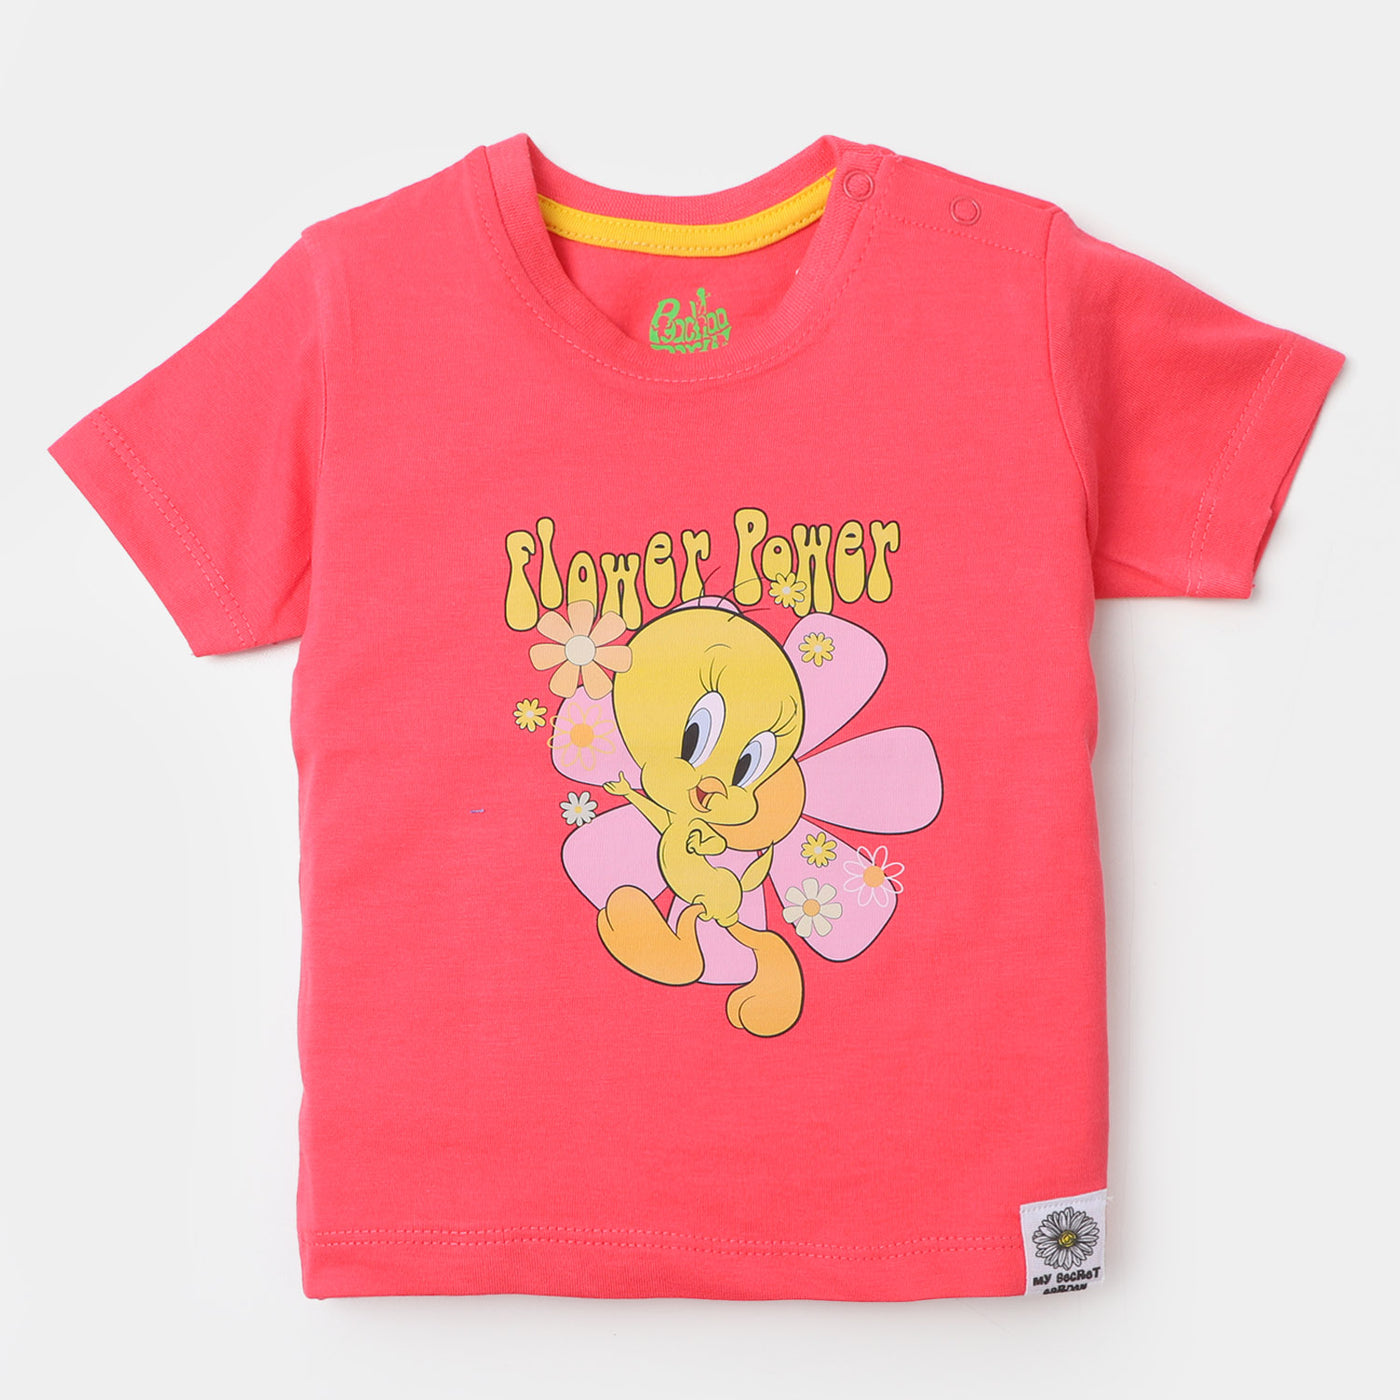 Infant Girls Cotton T-Shirt Flower Power - Hot Pink